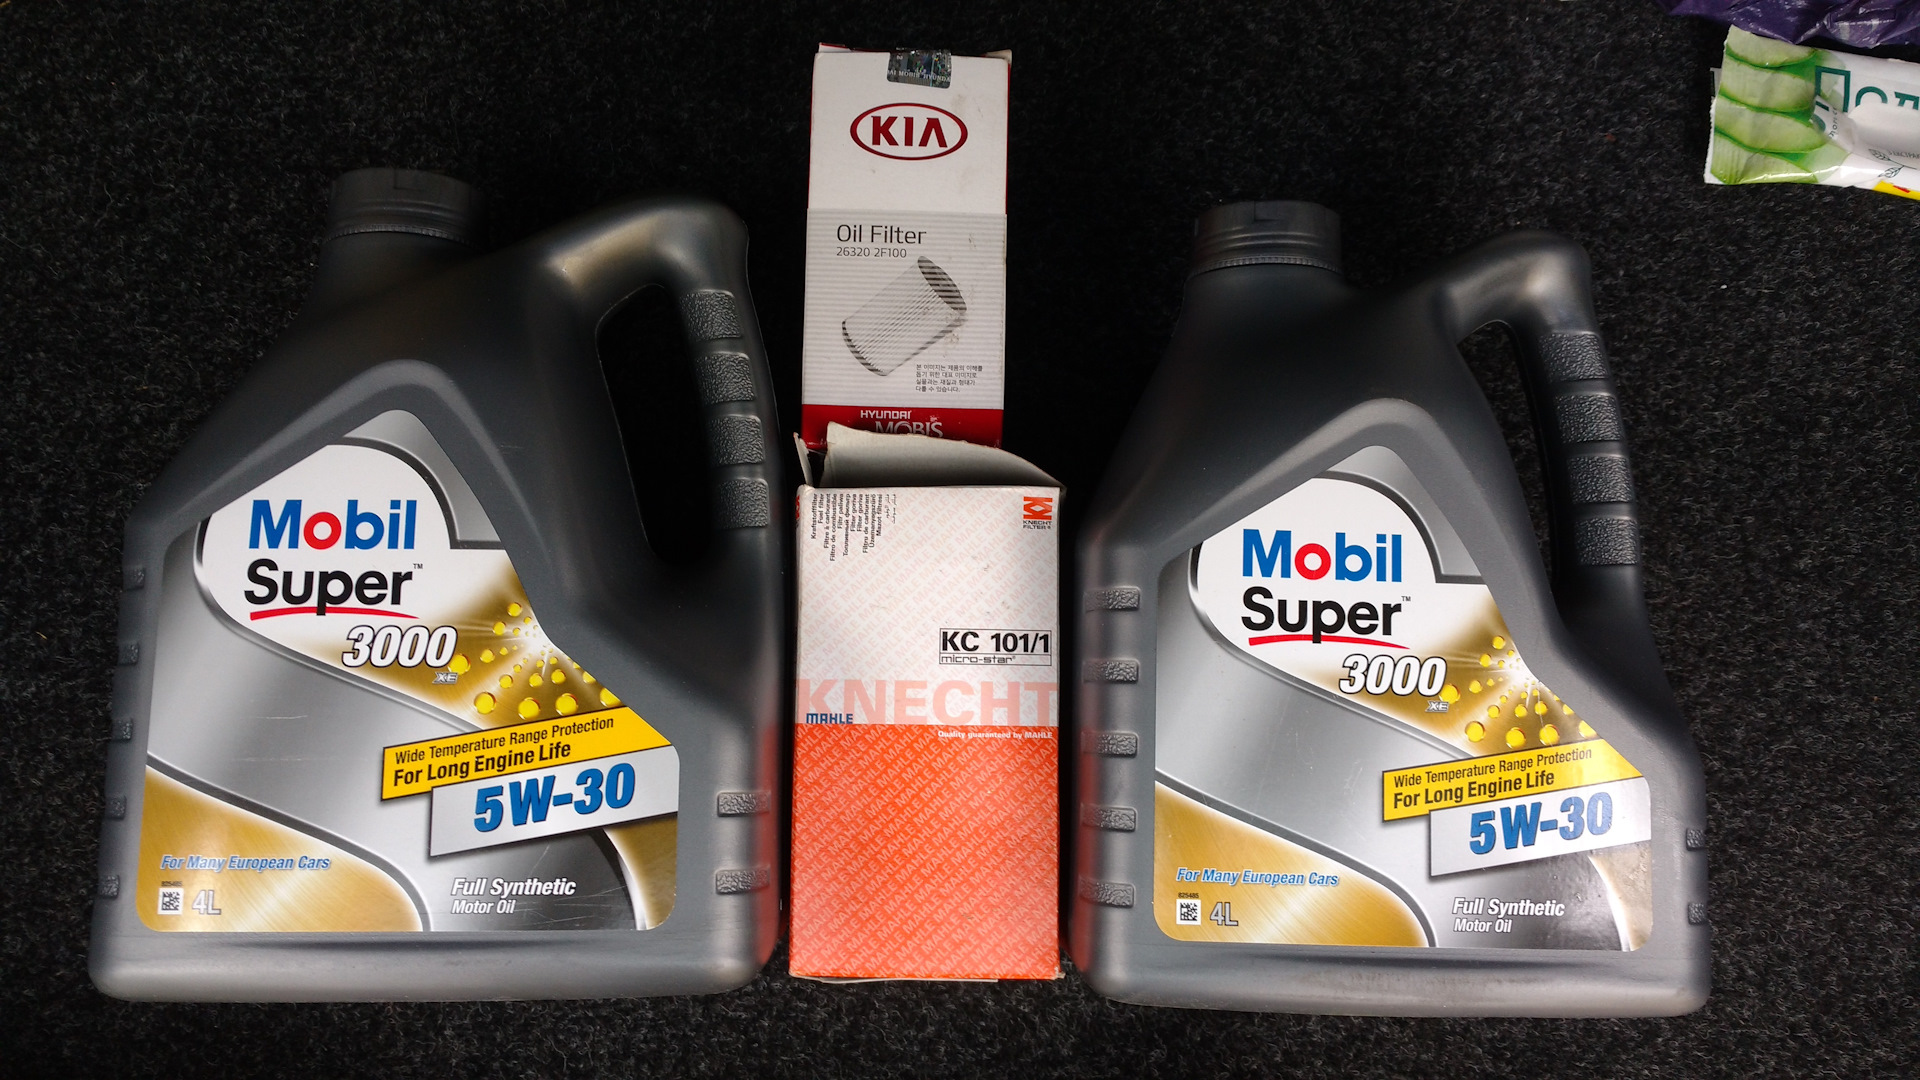 Замена масла киа соренто бензин 2.4. Масло Shell для Kia Sorento бензин 2 и 4. Масло мобил в Киа Соренто дизель 2,5. Масло для Kia Sorento 2.4. Киа Соренто 2011 масло.